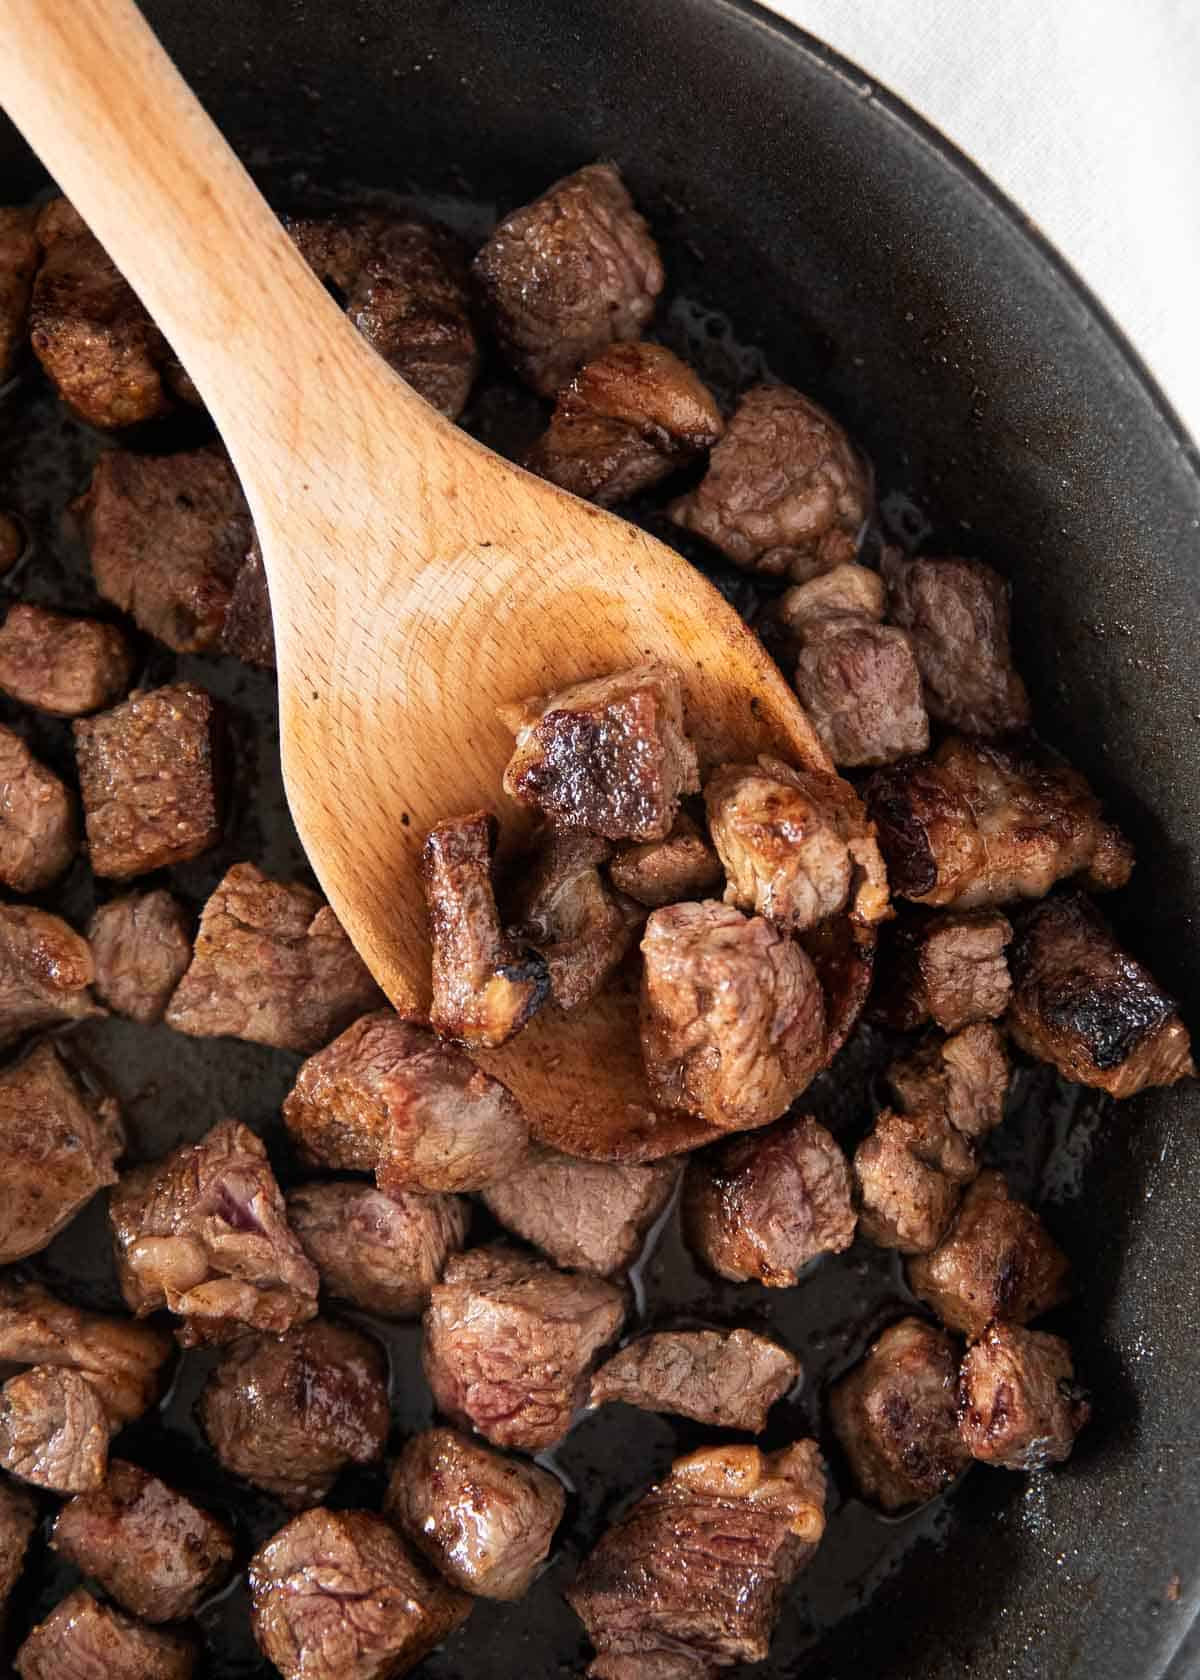 Steak bites in pan.